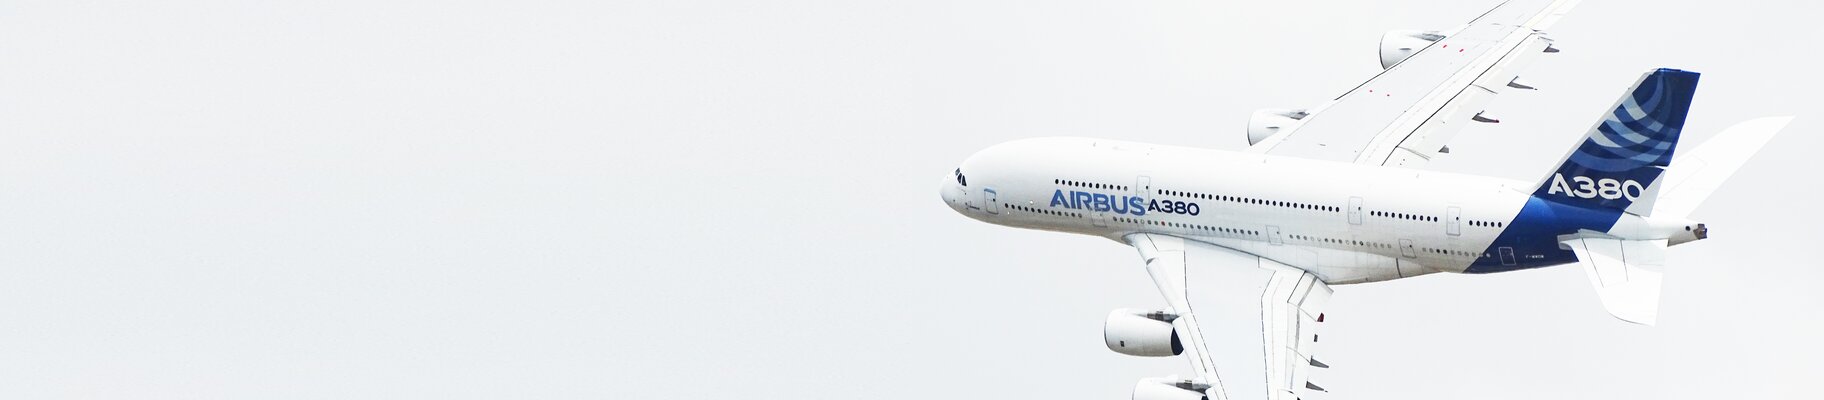 Airbus A380 aircraft.